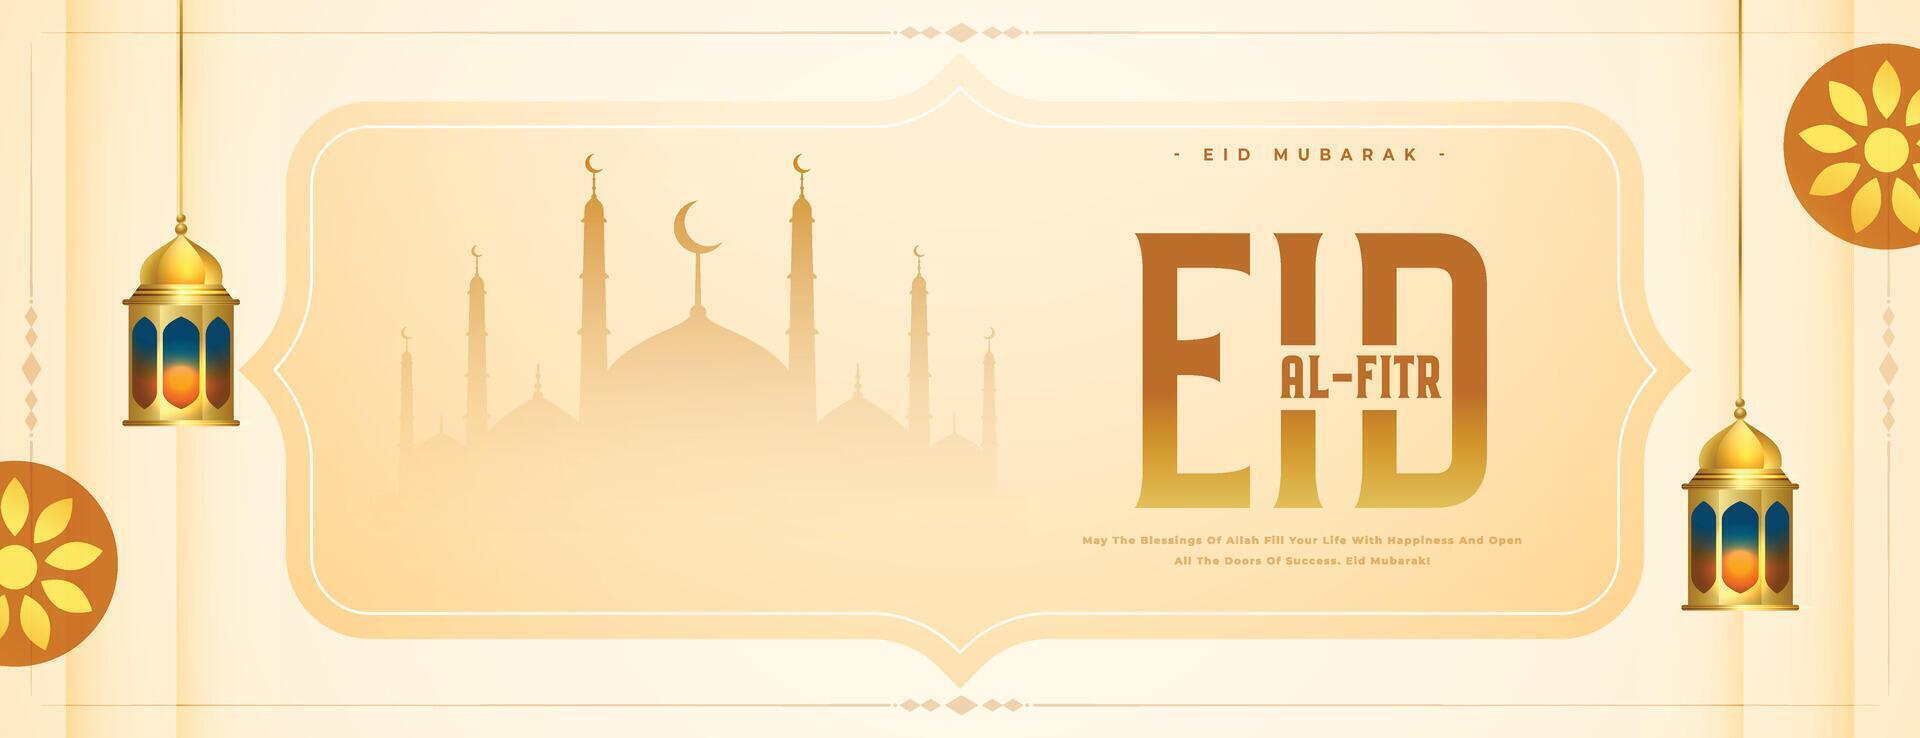 eid al fitr eve celebration banner with islamic decor vector